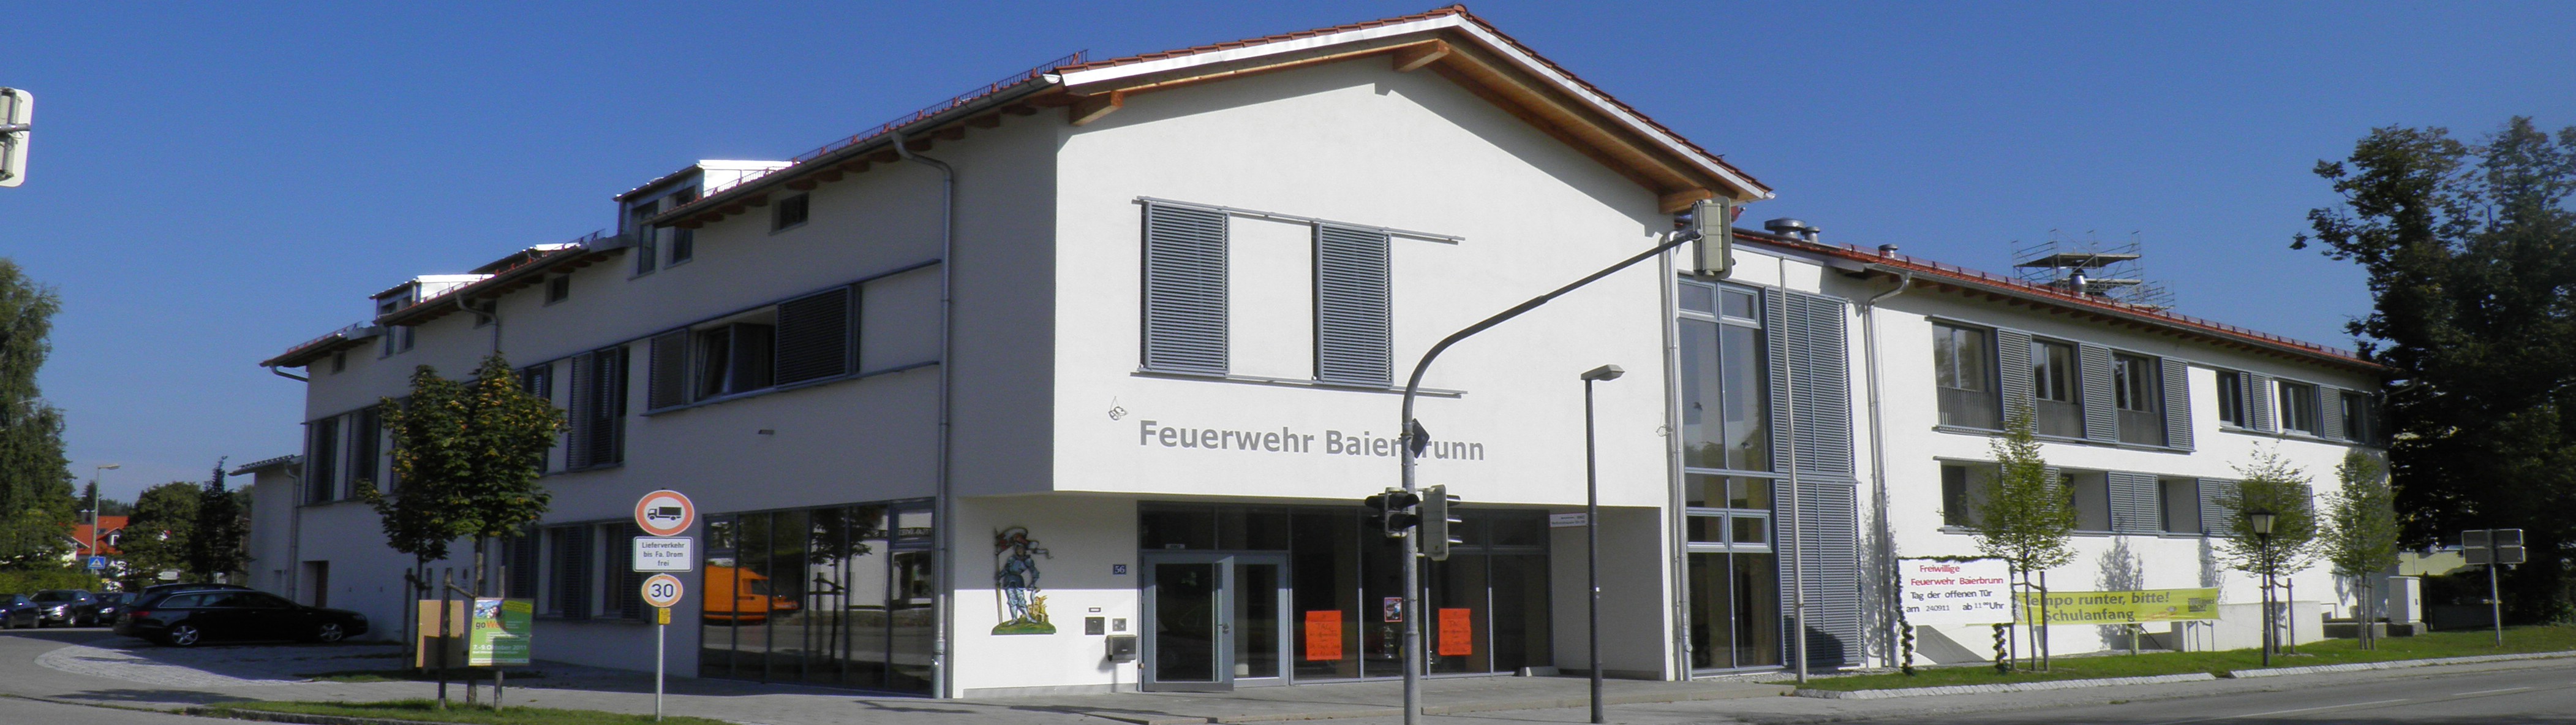 Gemeinde Baierbrunn – Feuerwehrhaus